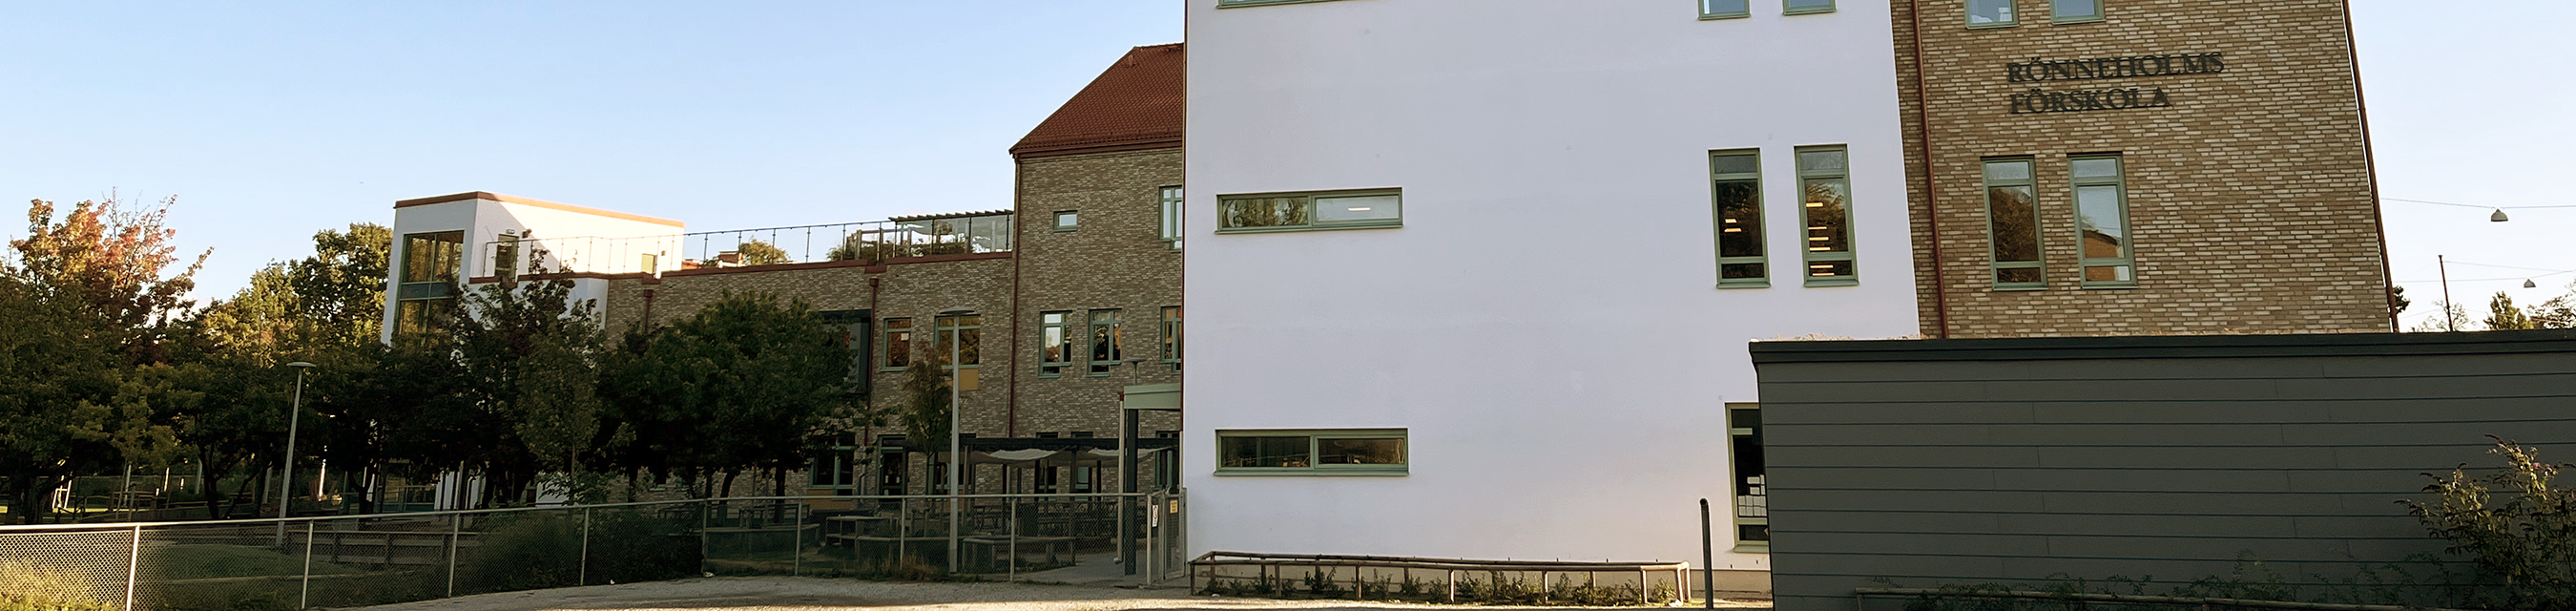 Rönneholms förskola har 15 avdelningar och är en av Malmös största förskolor. 